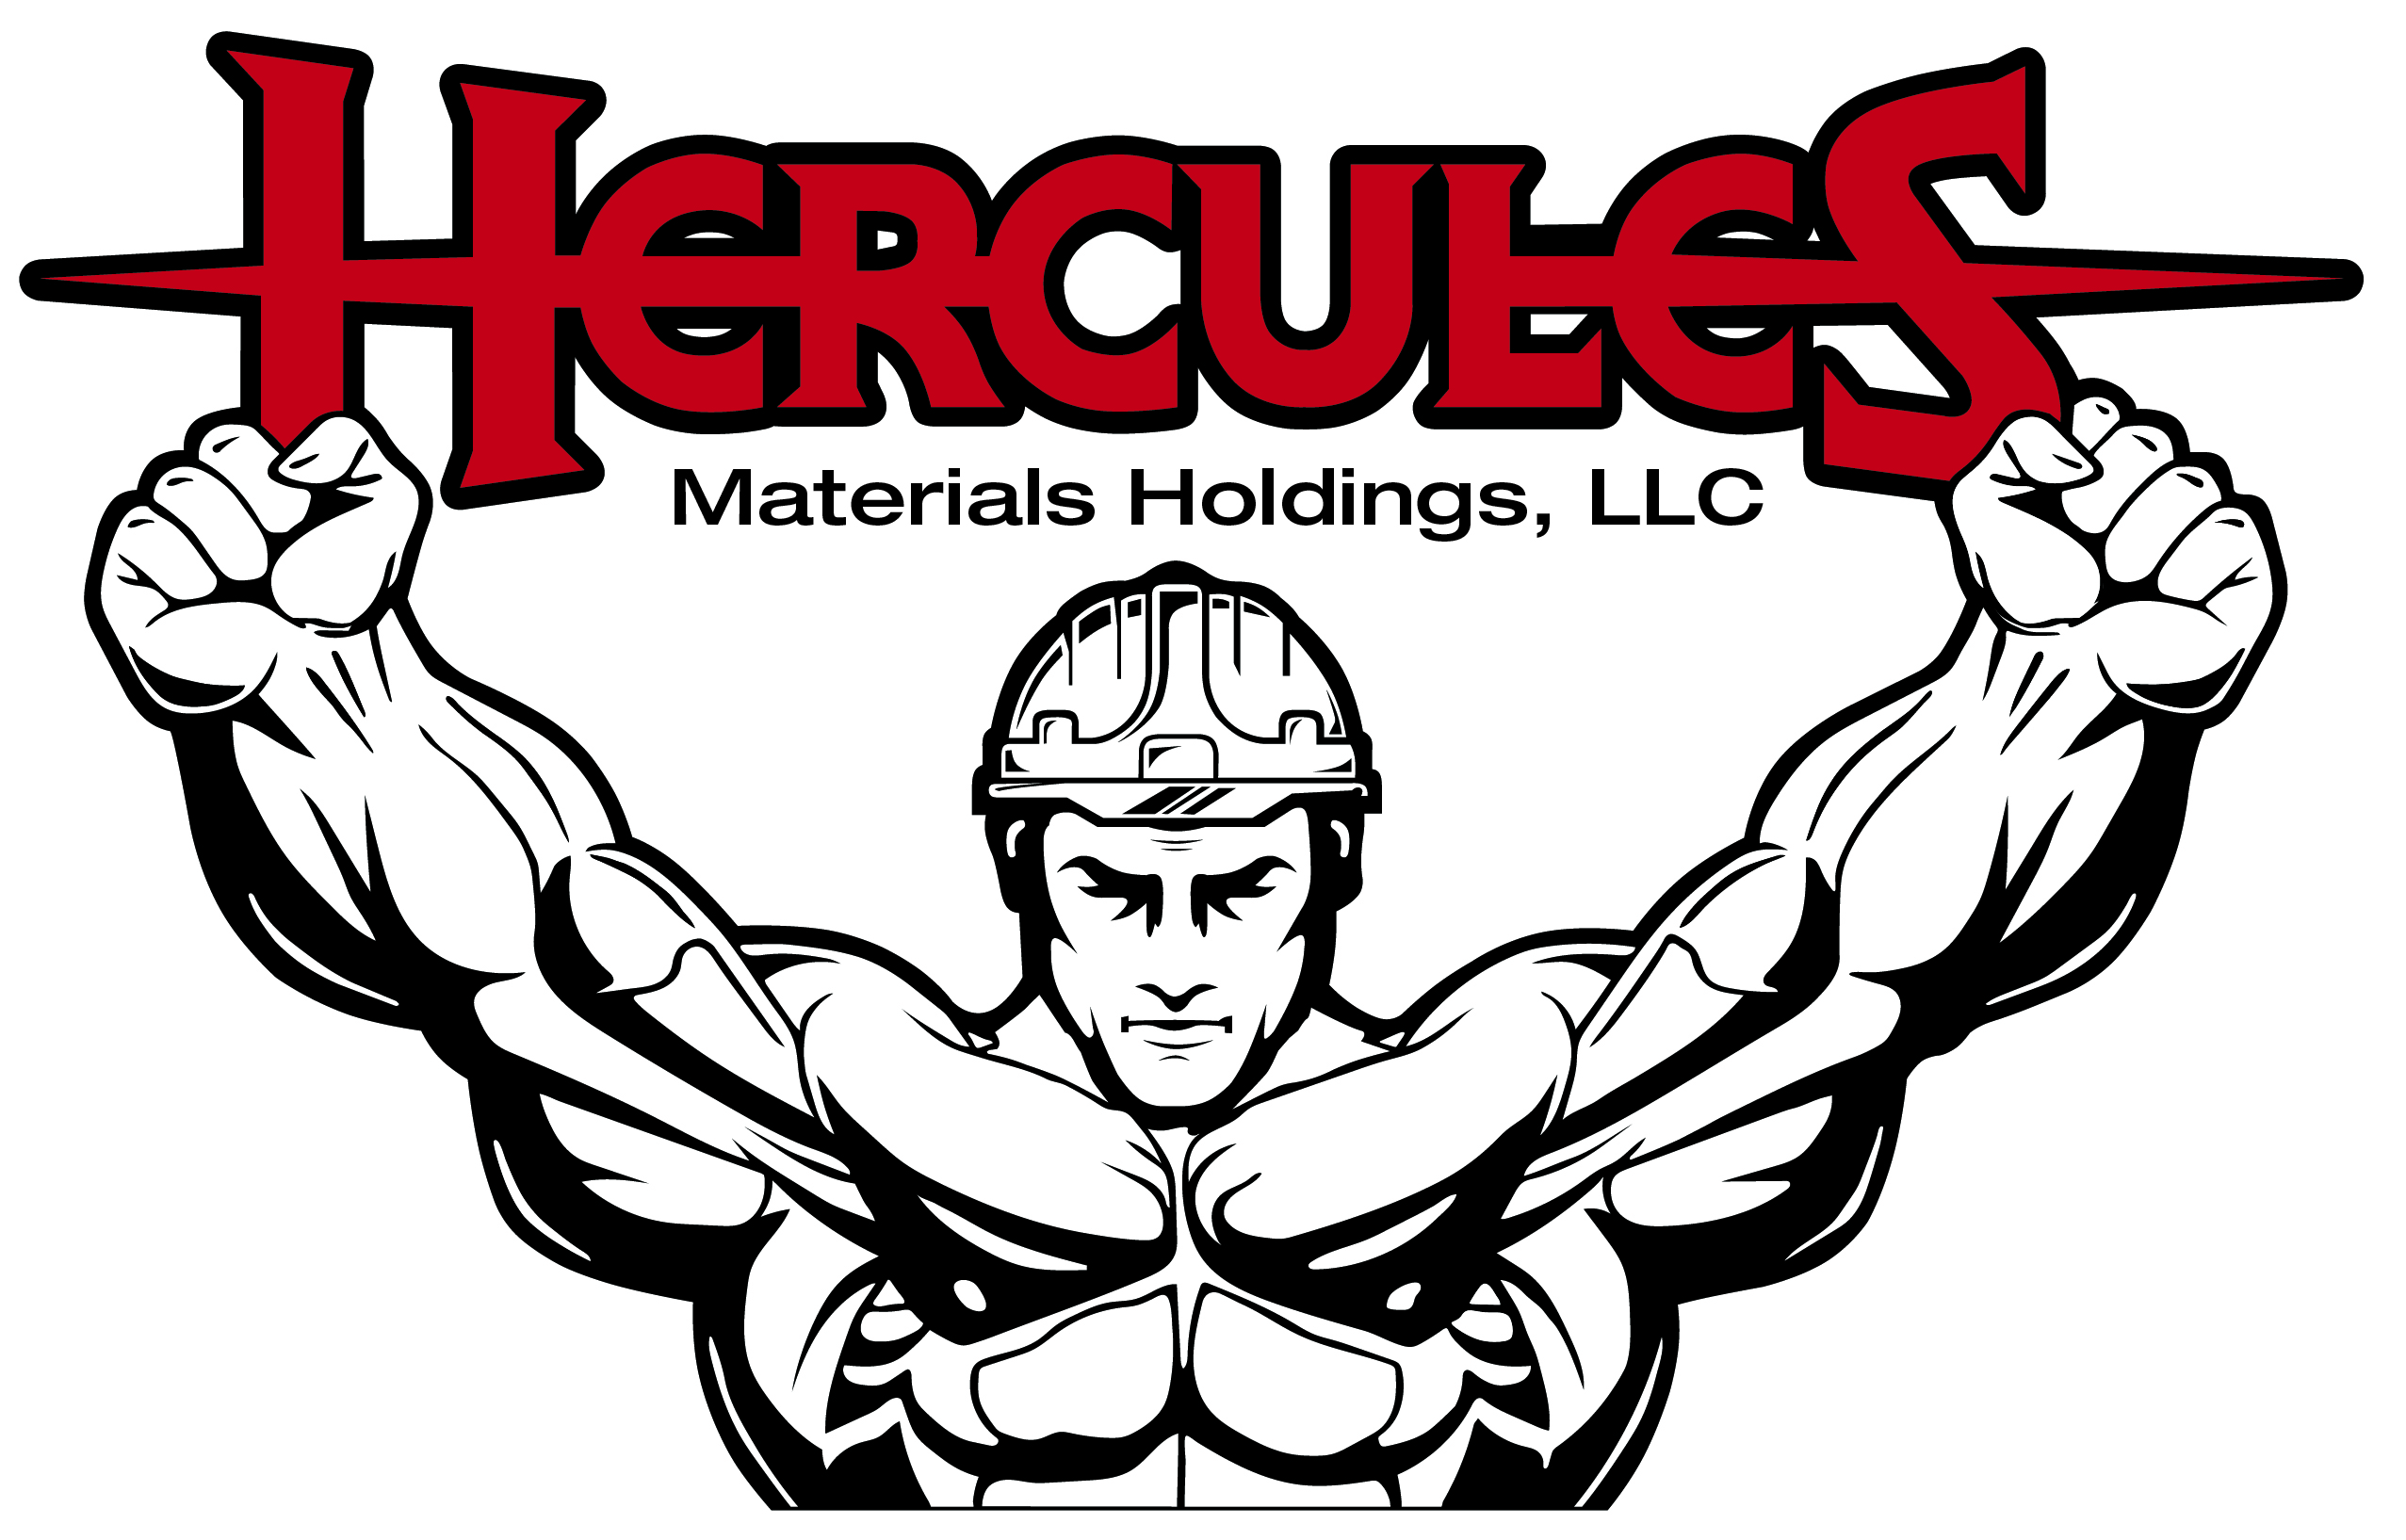 Hercules Materials Holdings LLC Logo Final-01 (003)